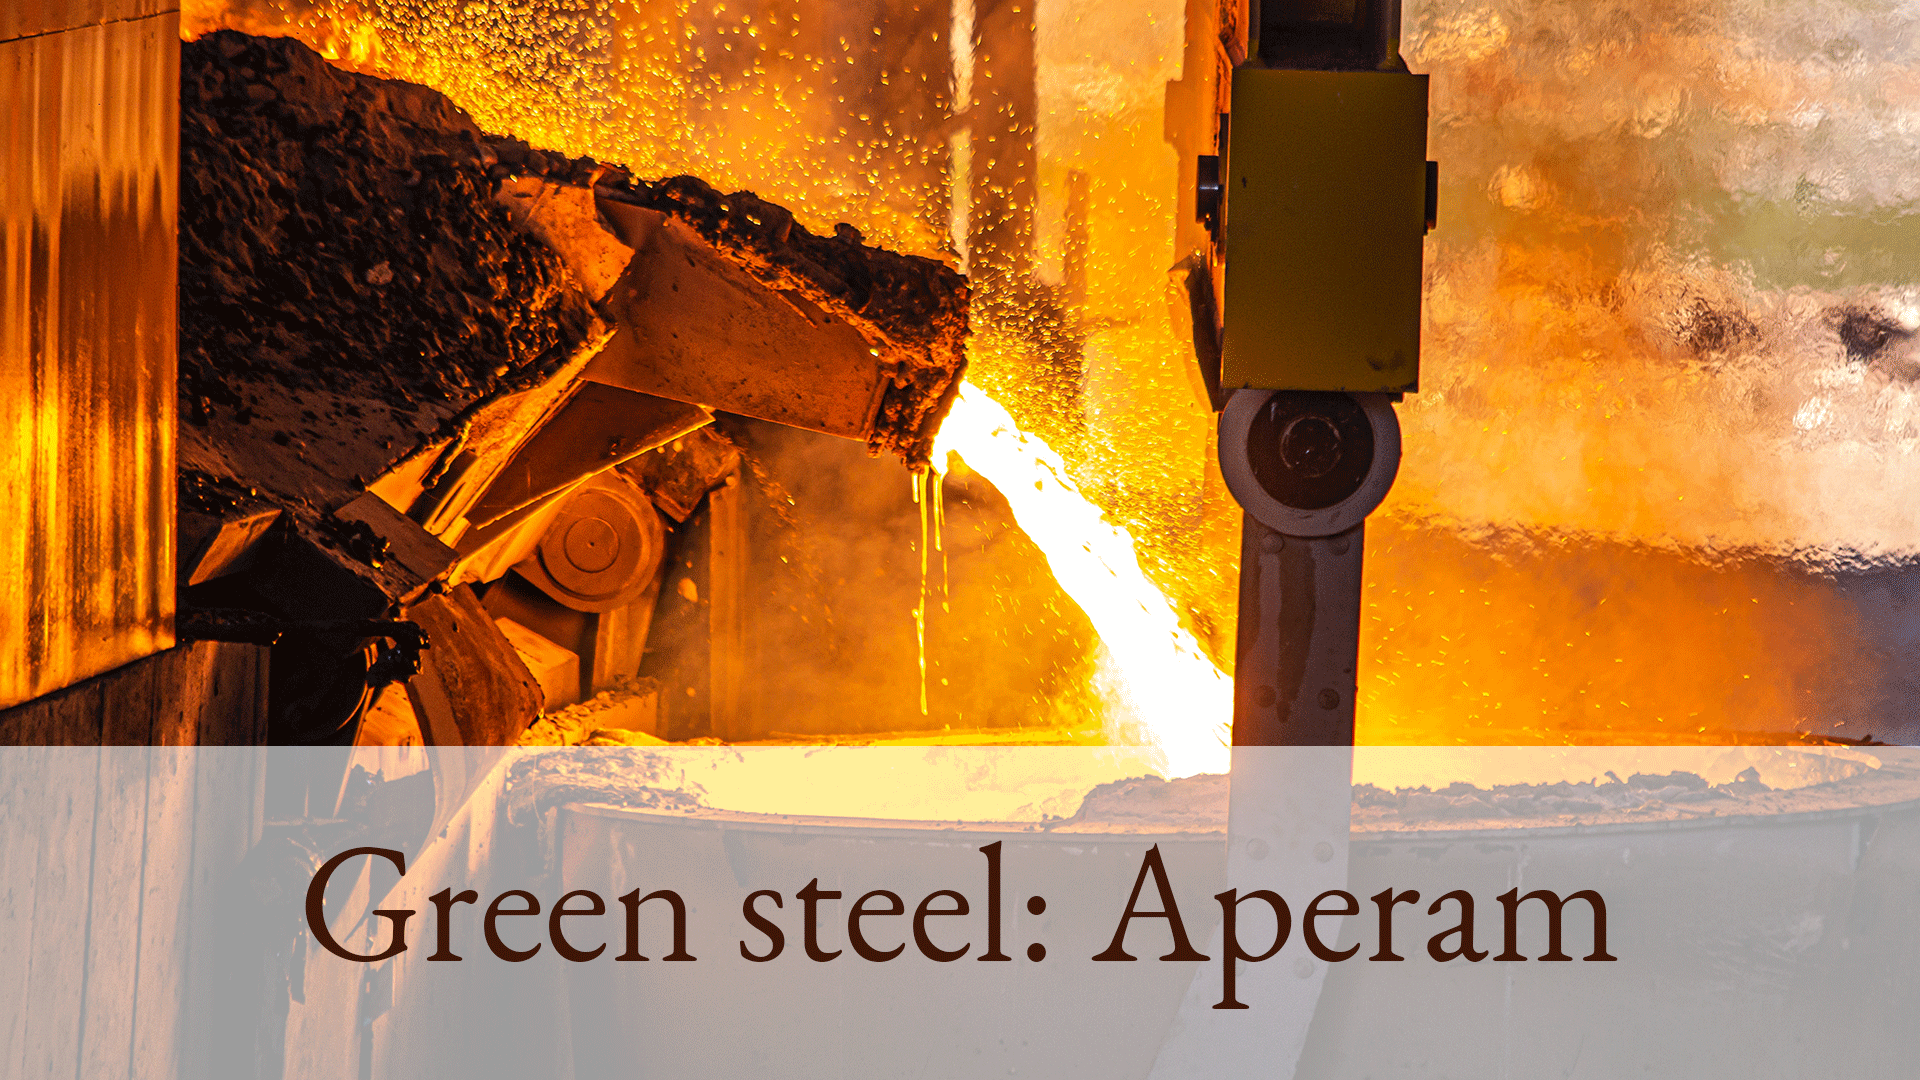 What is Carbon Steel? - aperam